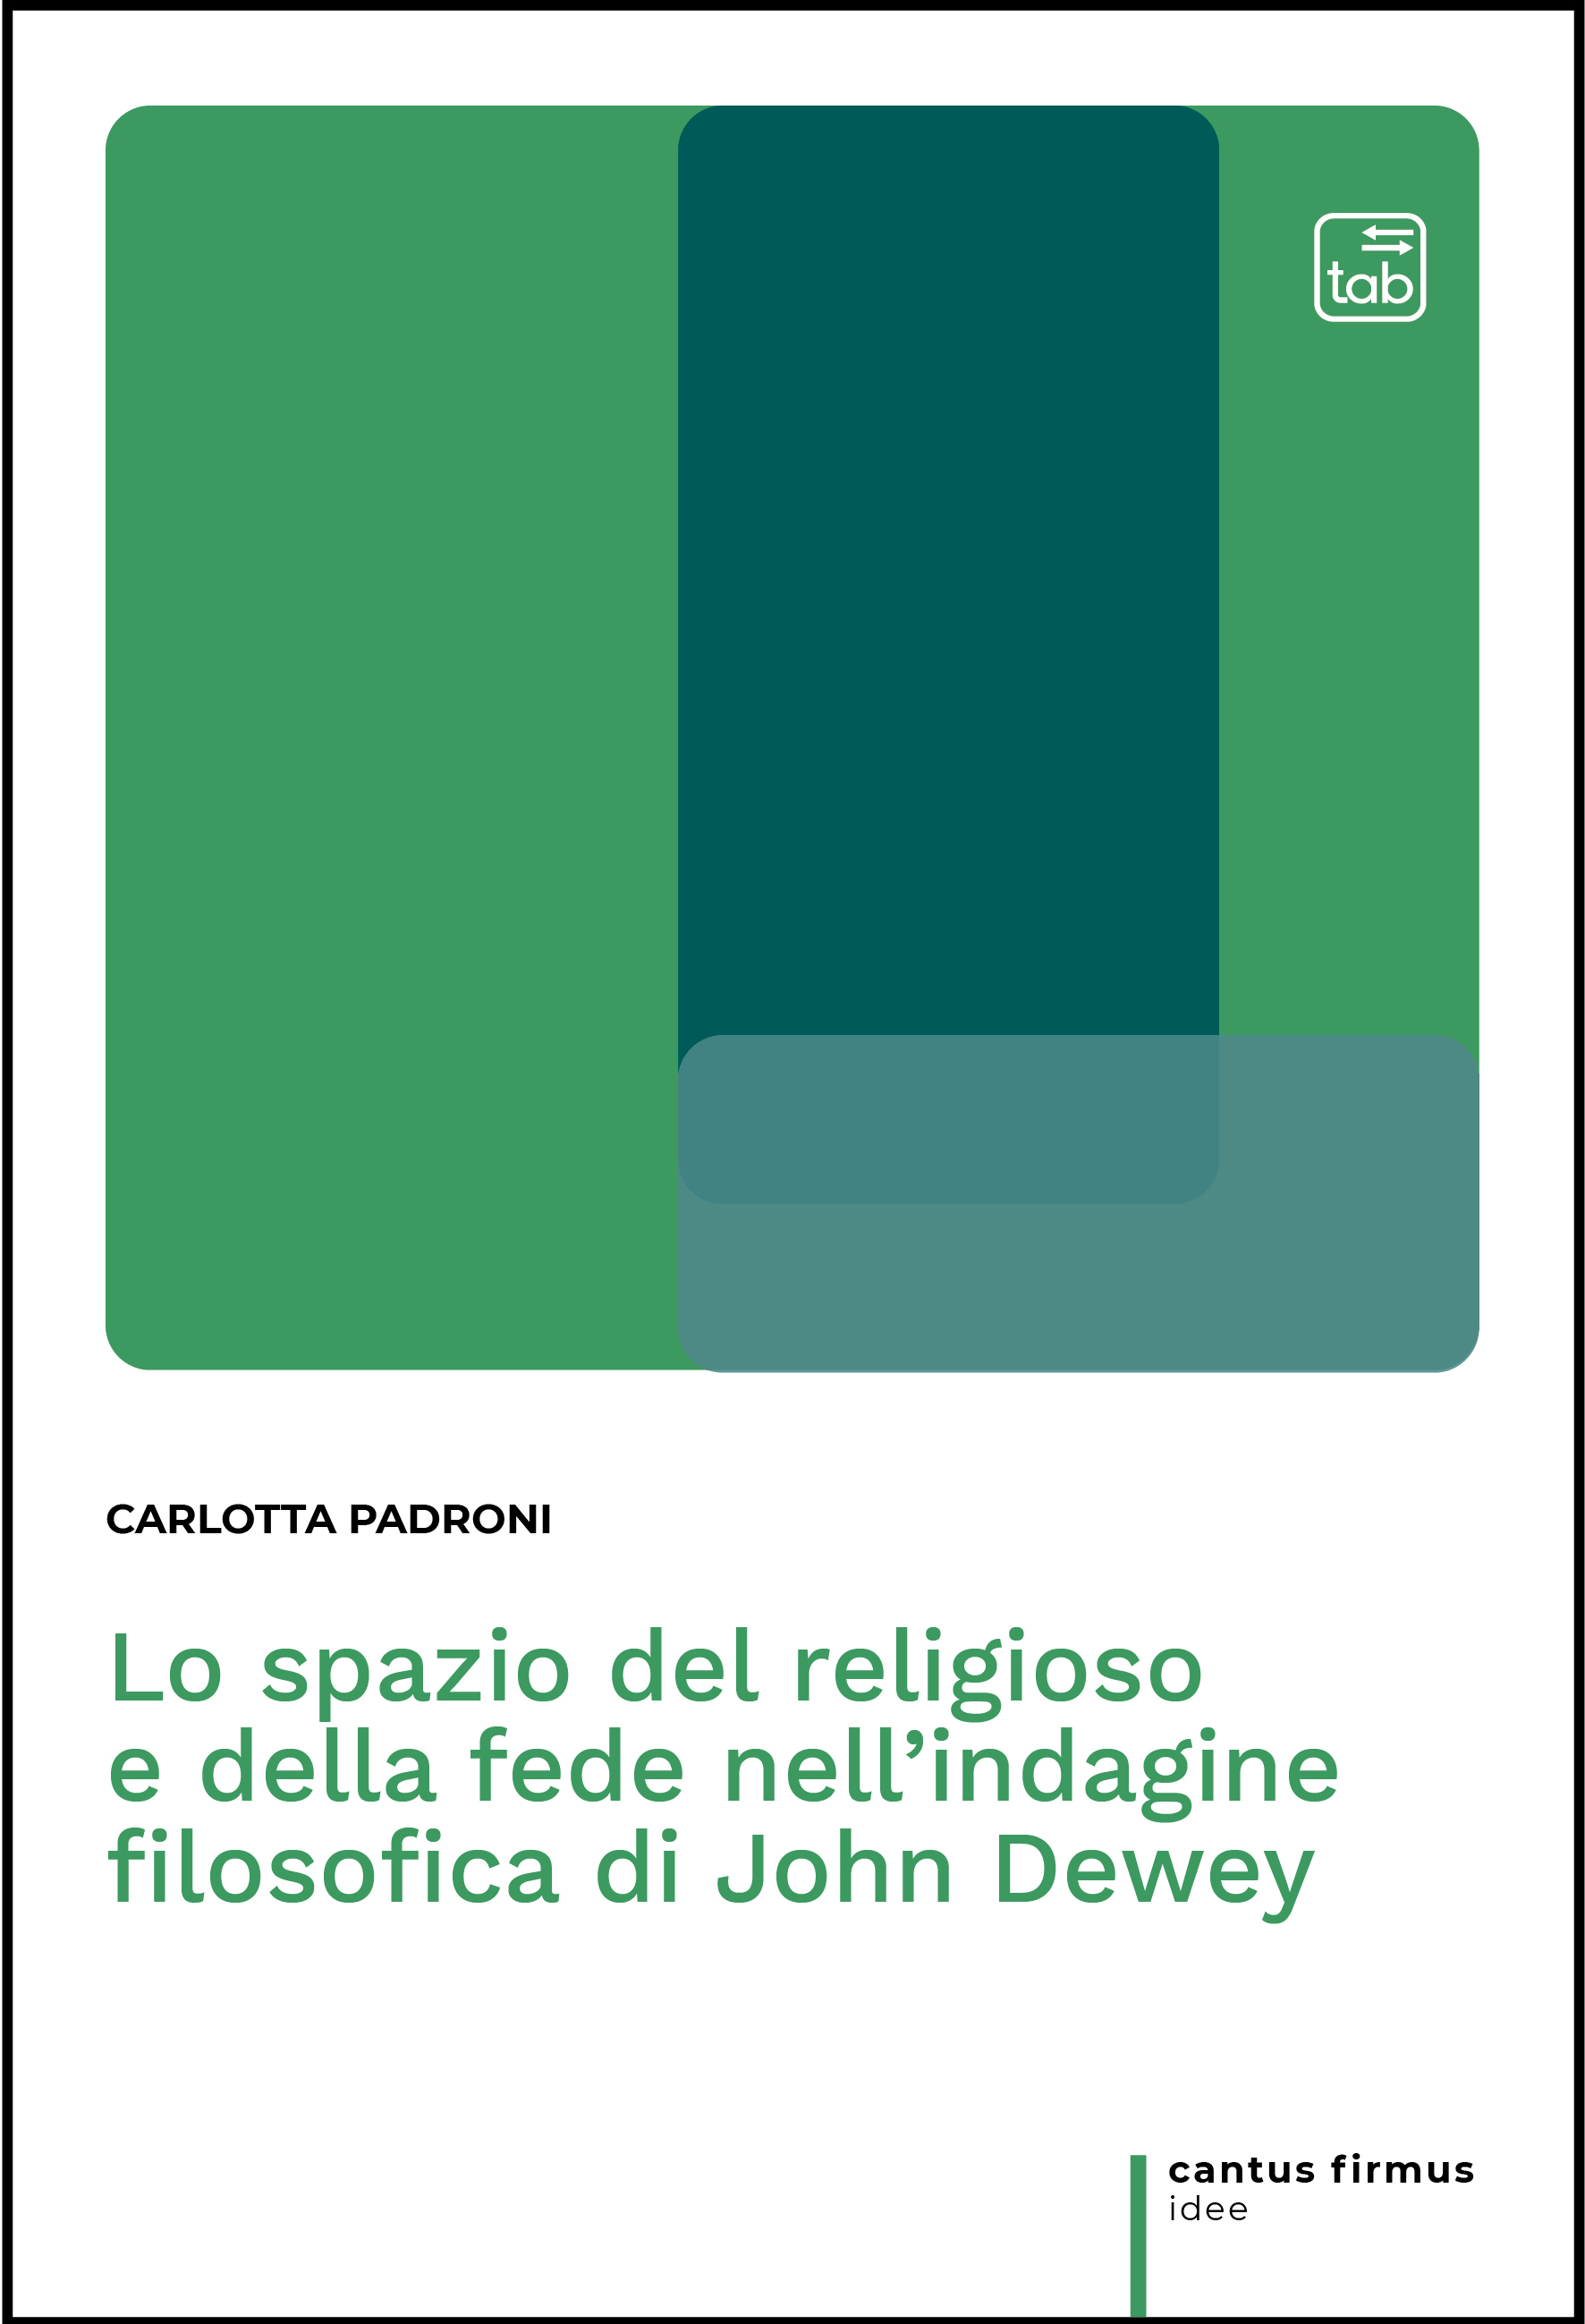 Lo spazio del religioso e della fede nell'indagine filosofica di John Dewey